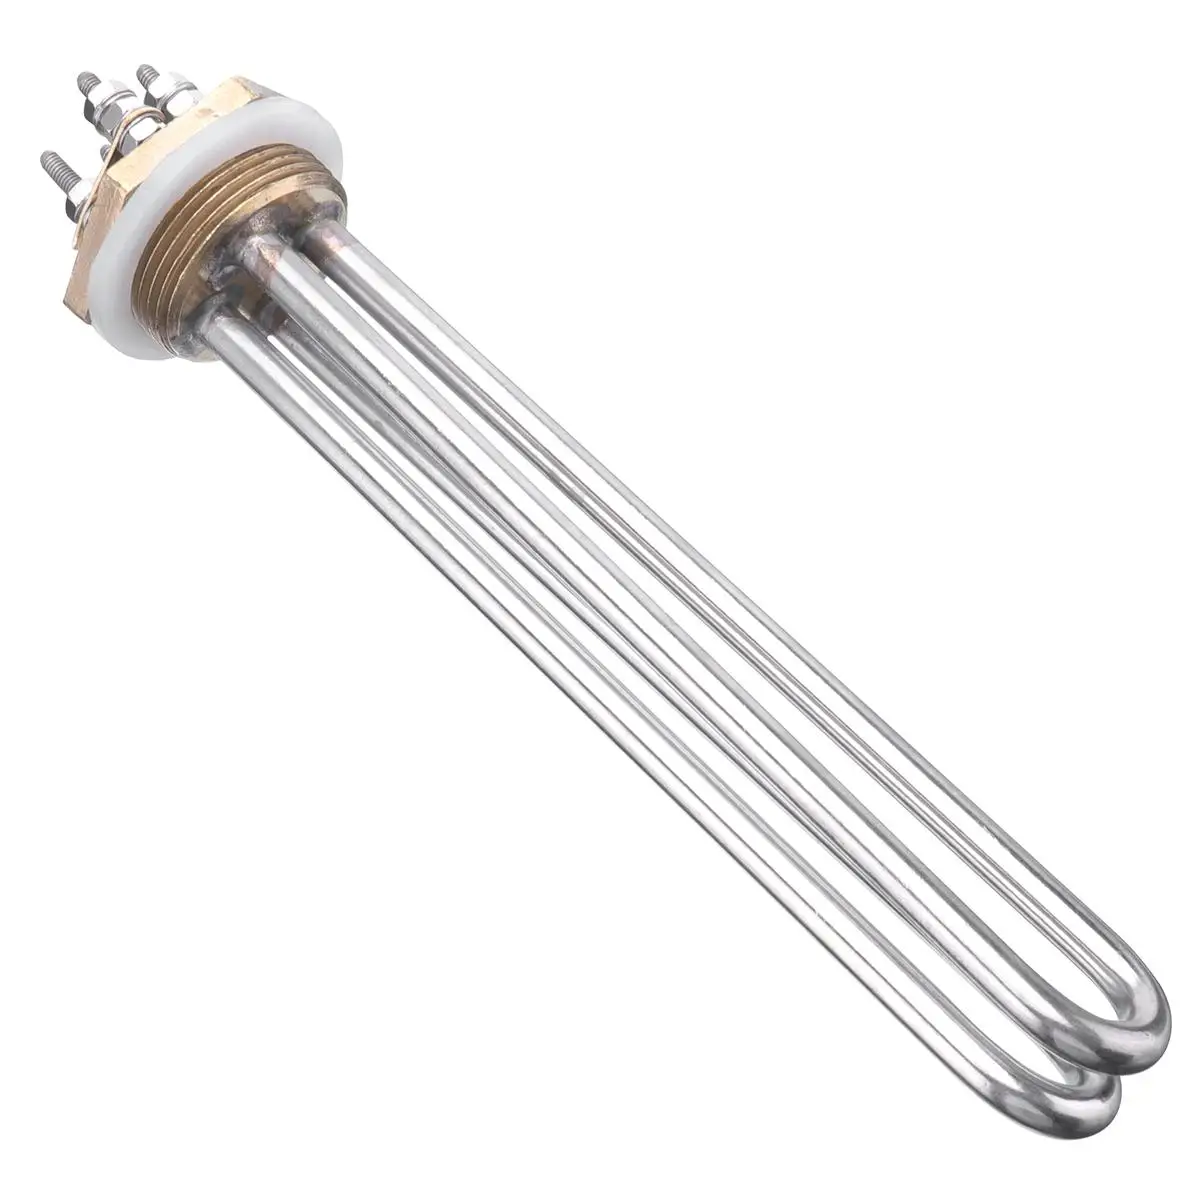 Tri-clamp 24 V 600 W водонагреватель Immesion нагревательный элемент водонагревателя с бакелитовой защитной крышкой